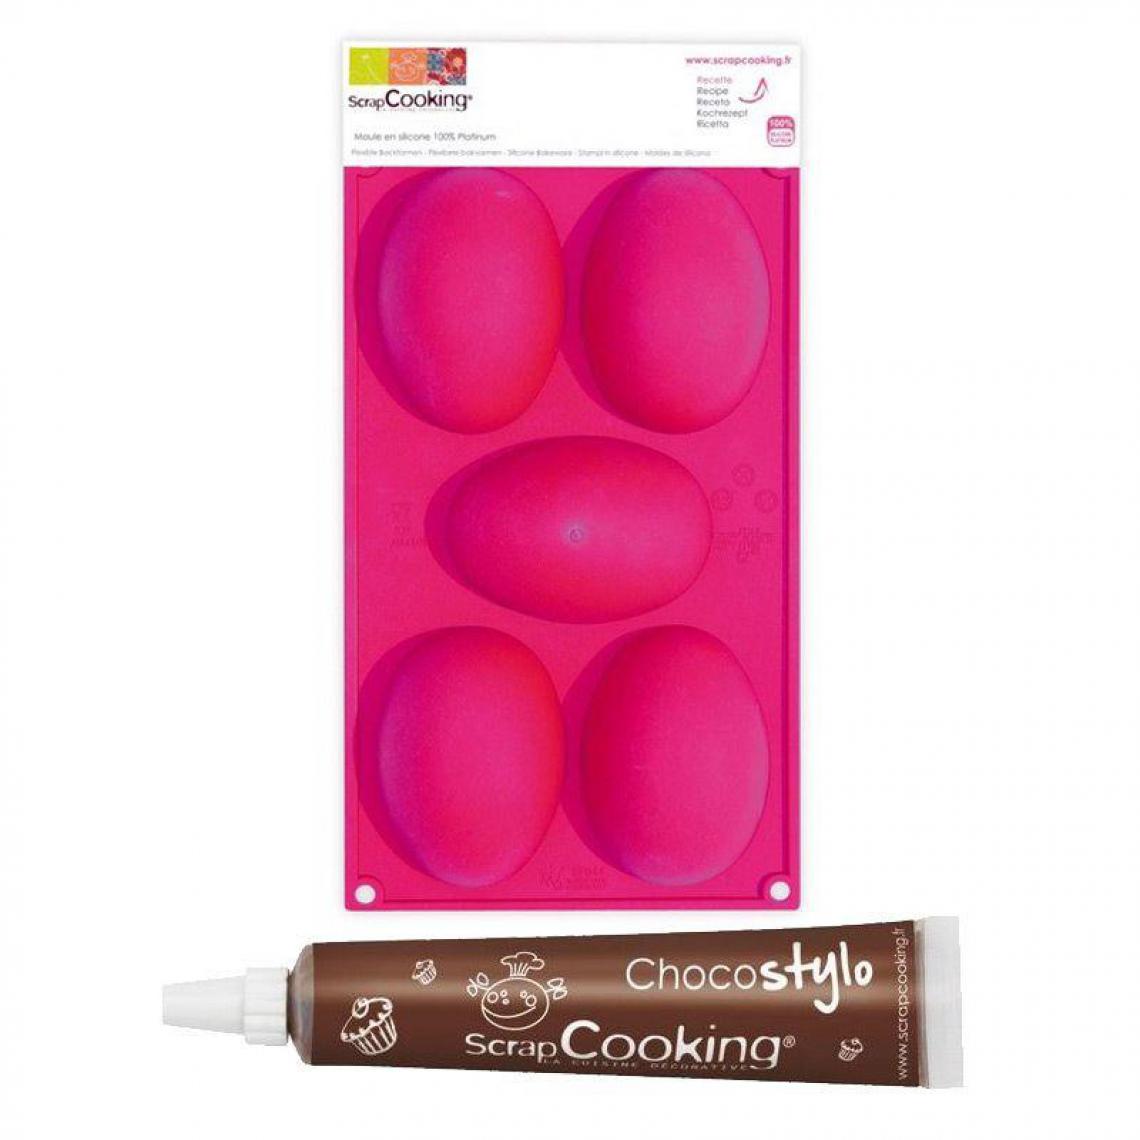 Scrapcooking - Moule 5 oeufs de Pâques + 1 Stylo chocolat offert - Kits créatifs